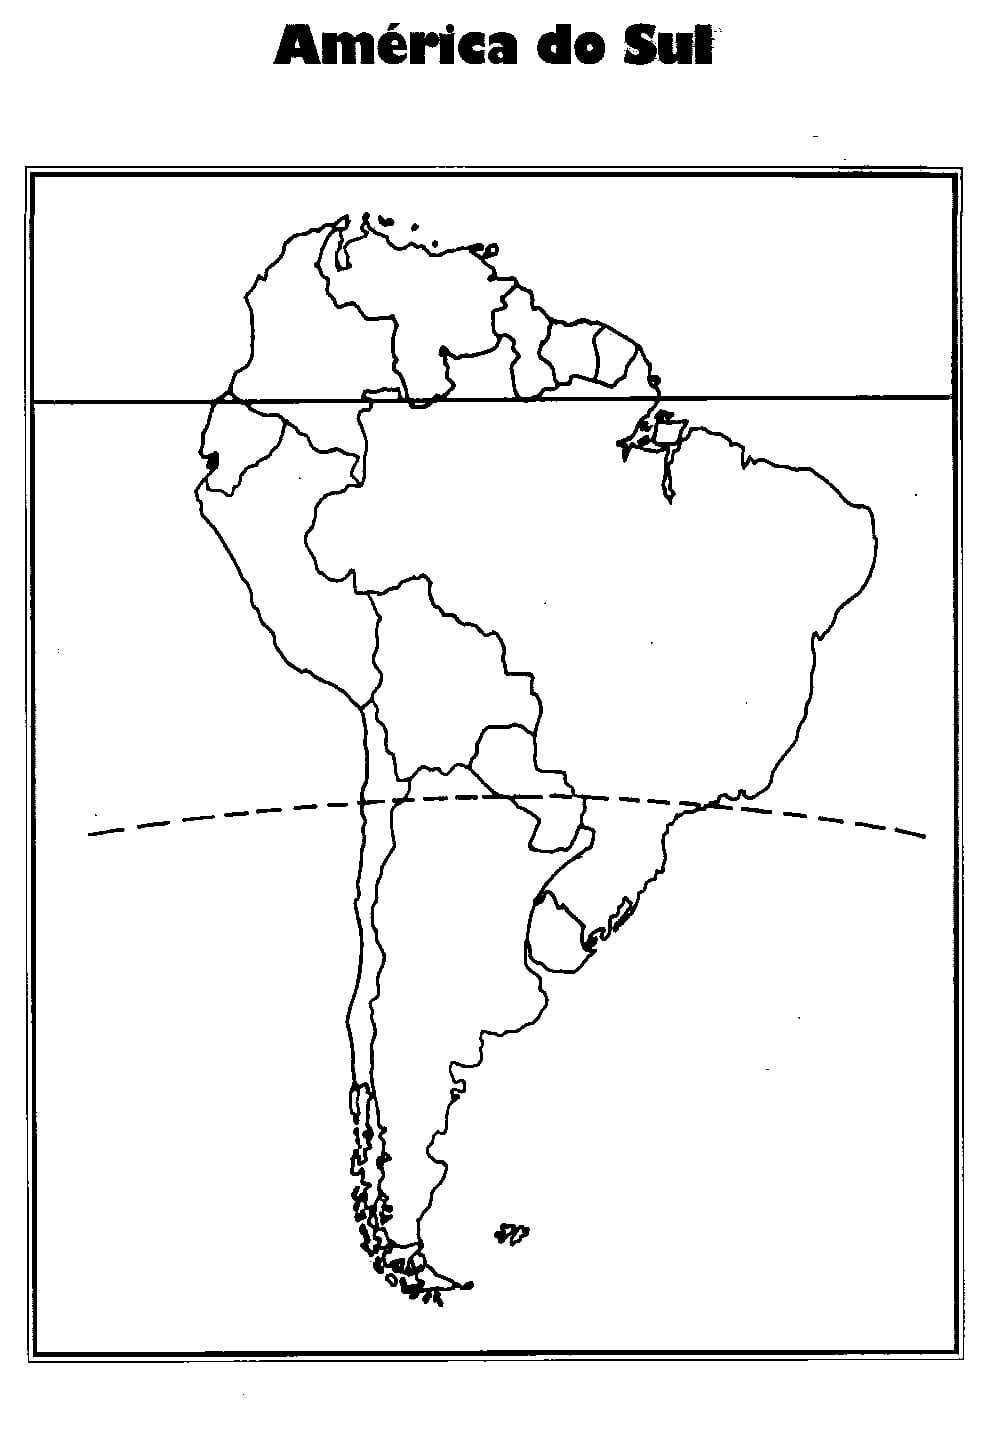 Mapa Da Am Rica Do Sul Para Colorir â Pampekids Net